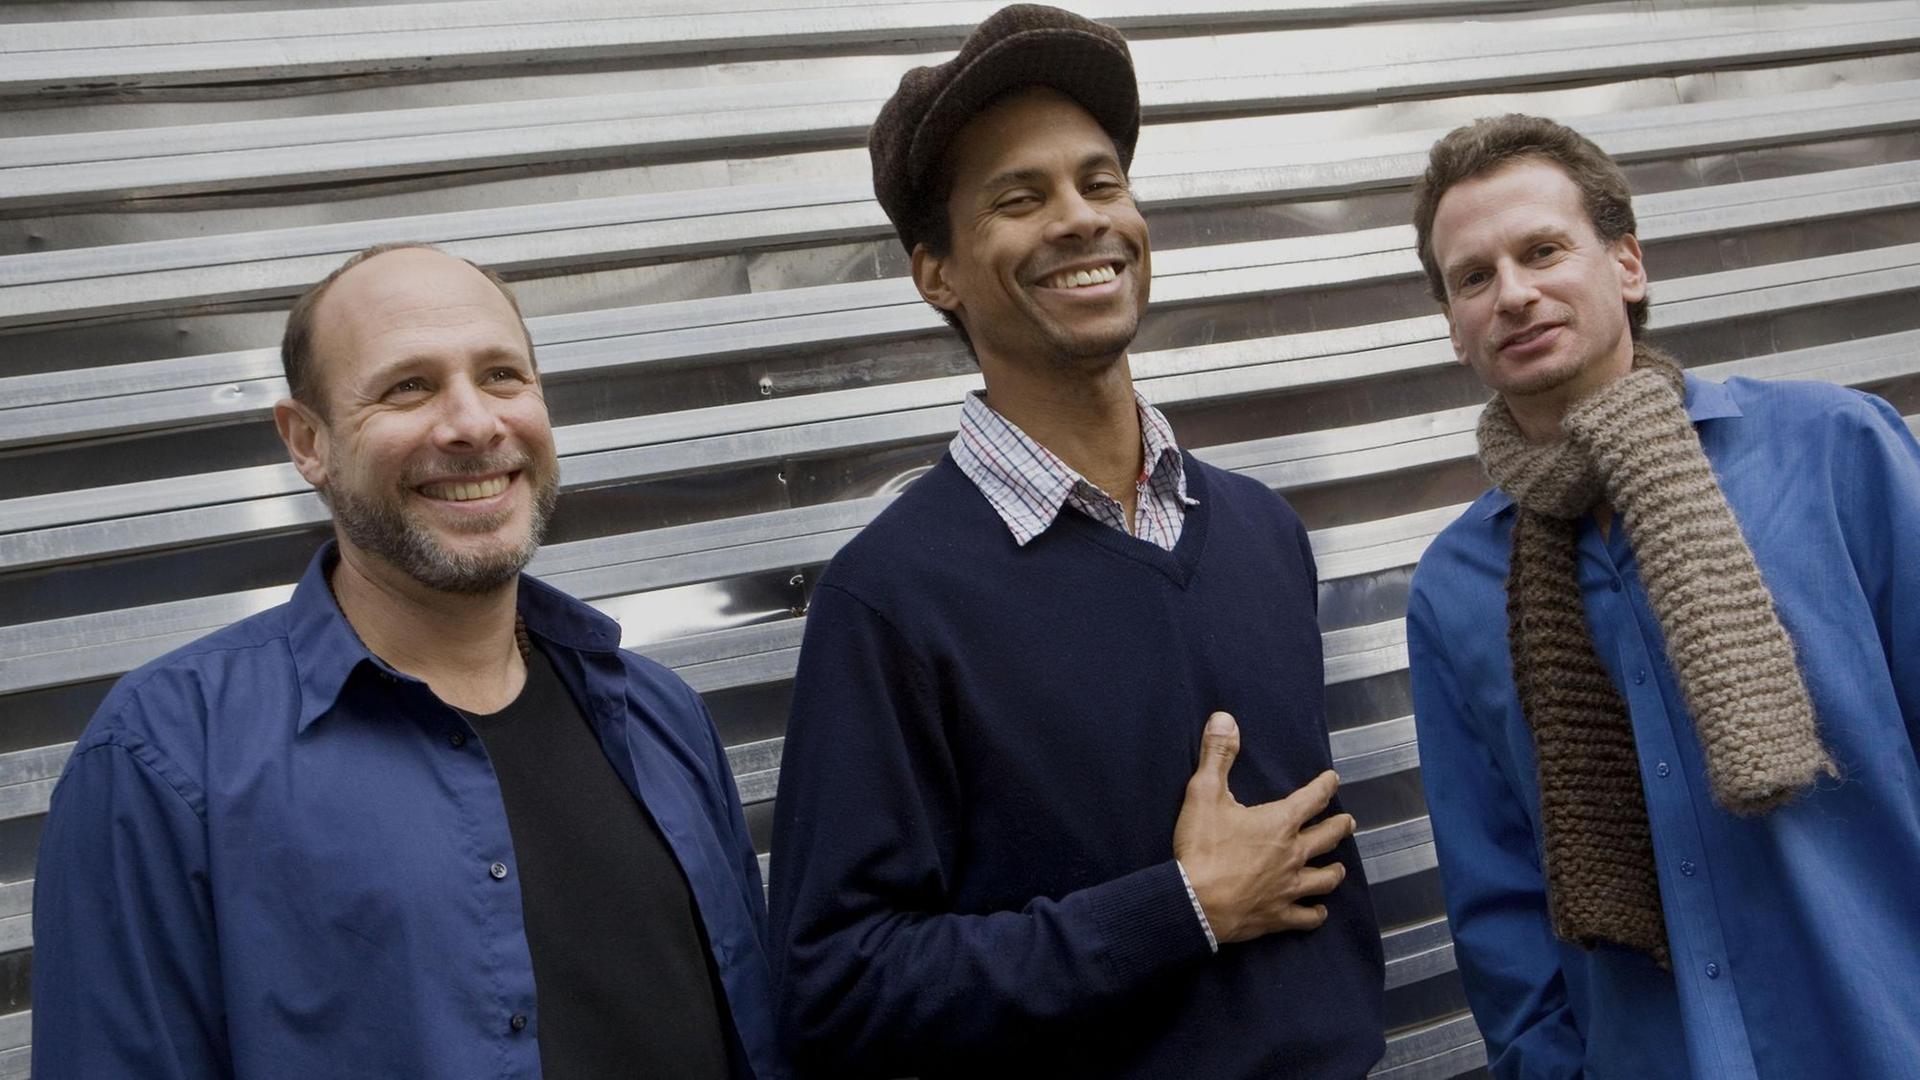 Drei Männer stehen lachend nebeneinander vor einem Garagentor. Der rechte und linke tragen jeweils ein blaues Hemd, der mittlere eine große Ballonmütze